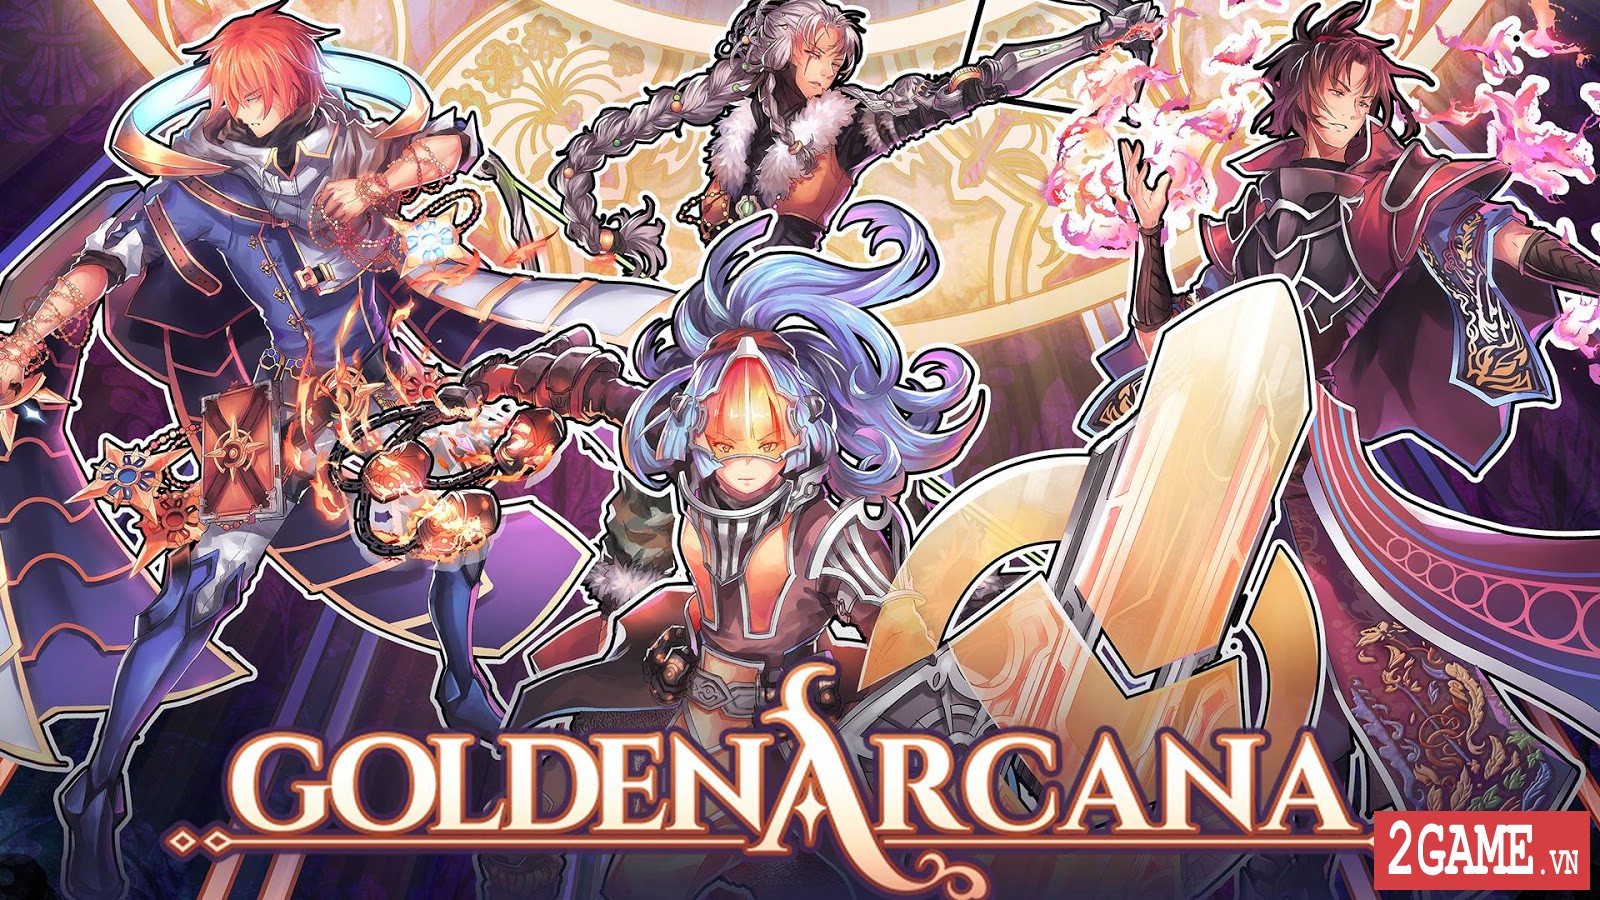 Golden Arcana: Tactics – Game đấu thẻ bài kết hợp nhập vai mang đậm phong cách anime